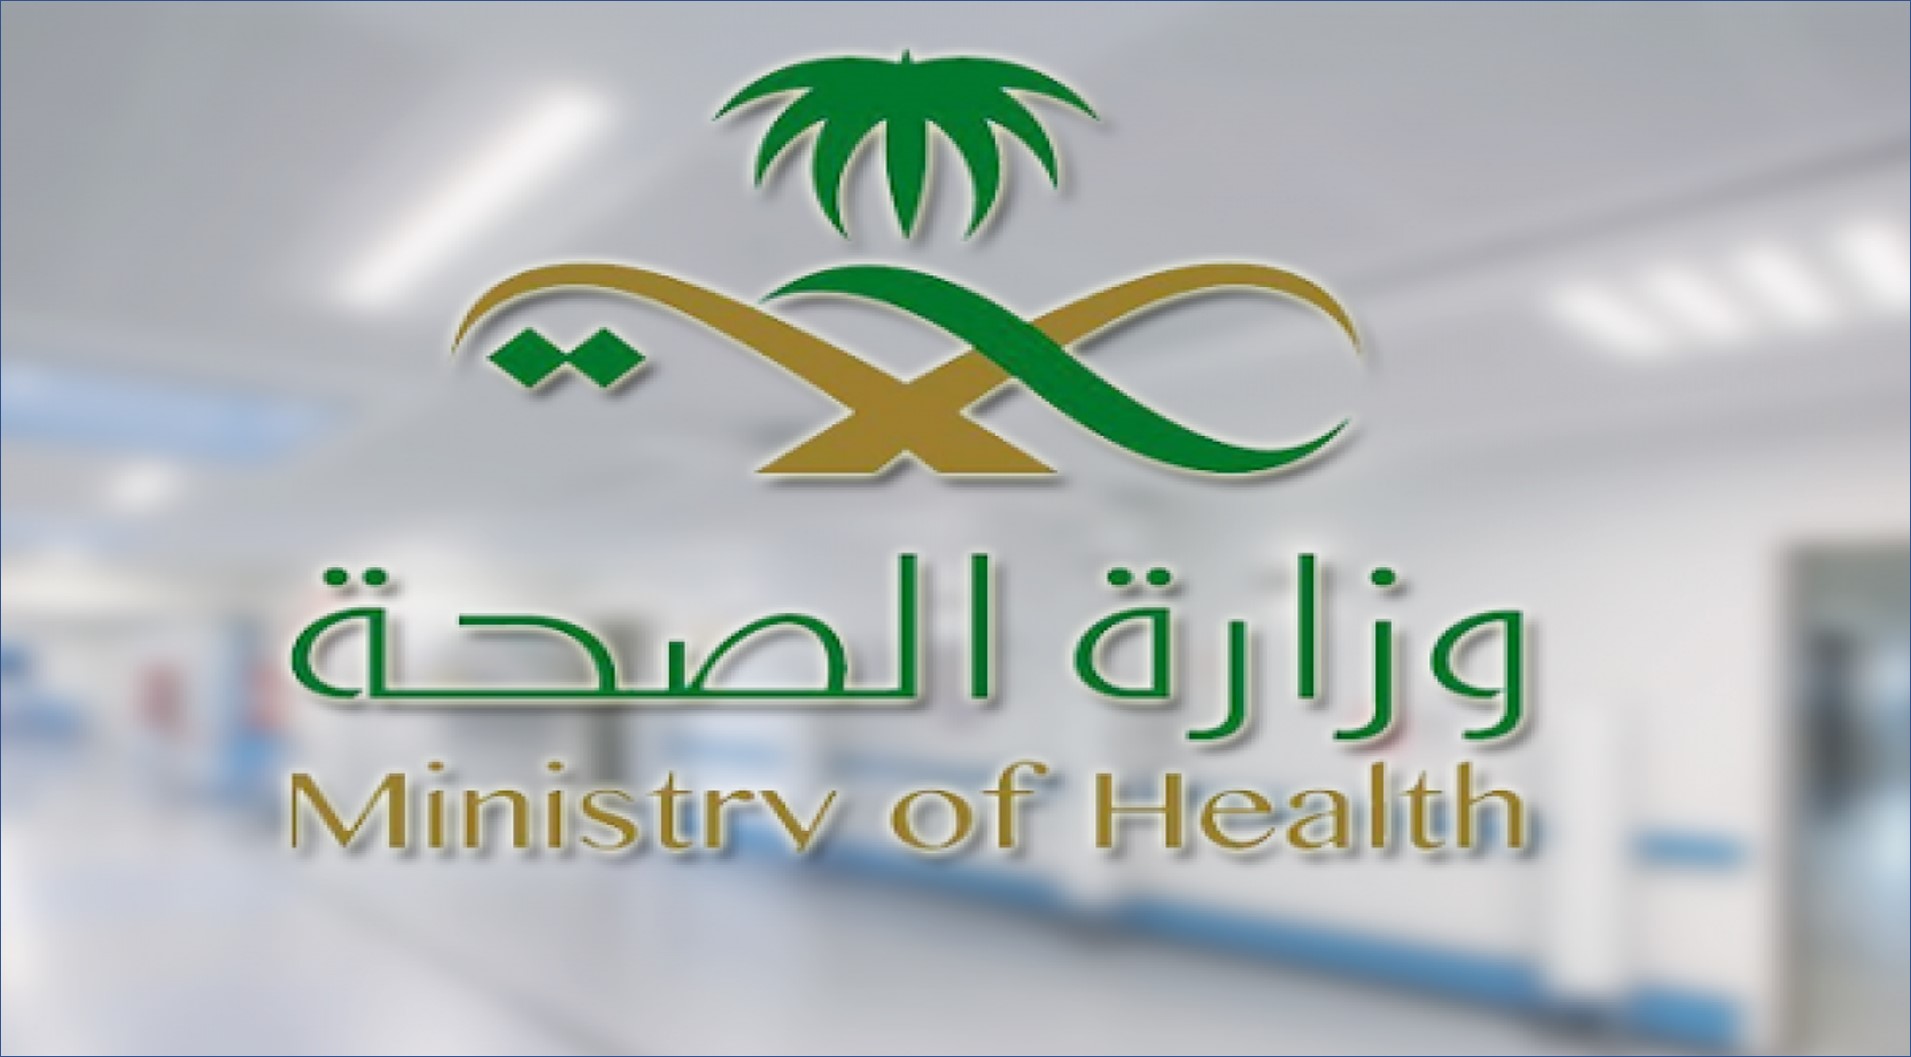 وزارة الصحة السعودية تعلن عن 90 وظيفة للرجال والنساء